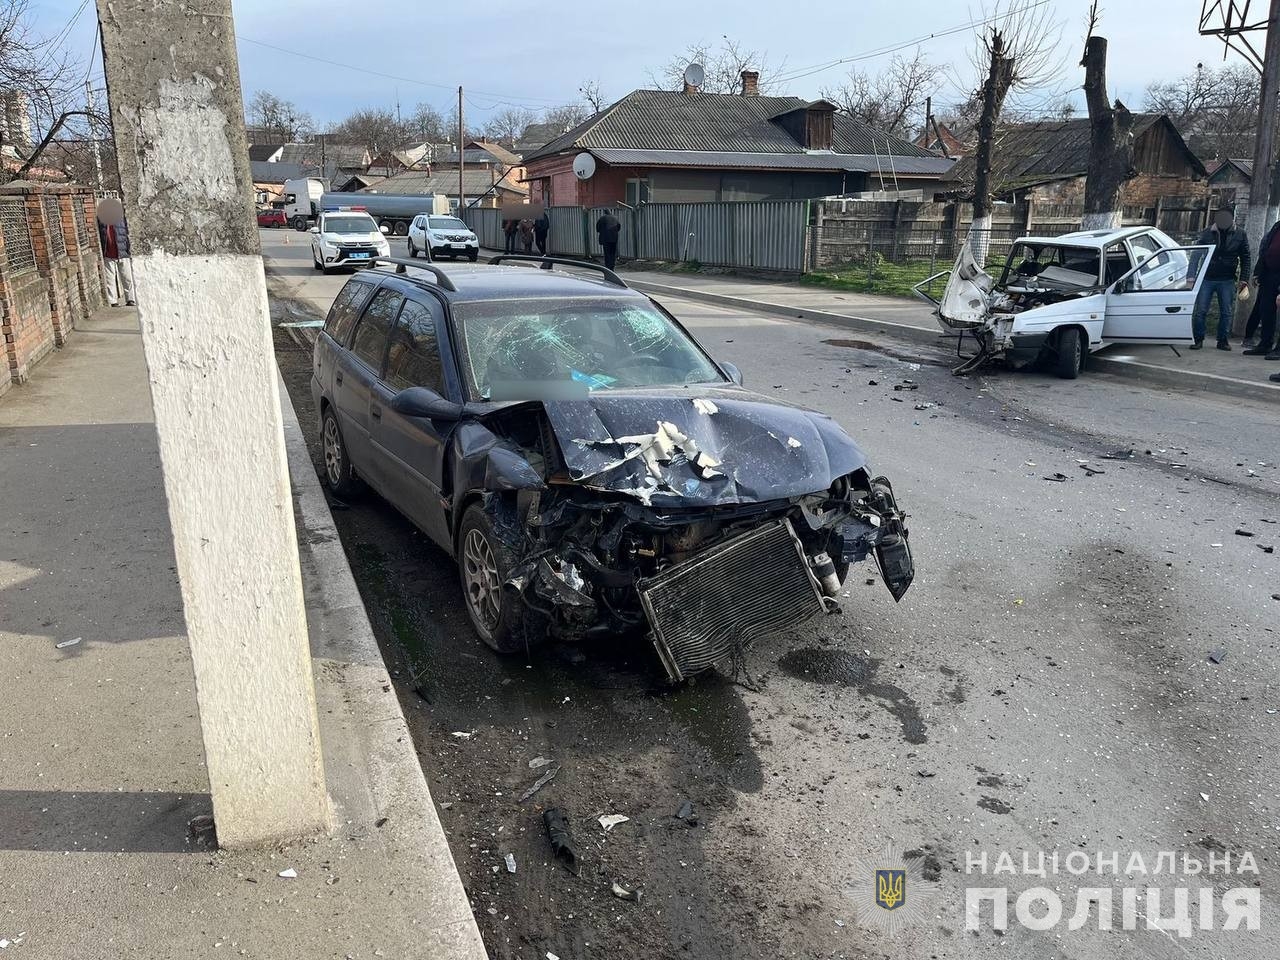 У Гайсині зіткнулись автомобілі Opel та Skoda - постраждала пасажирка